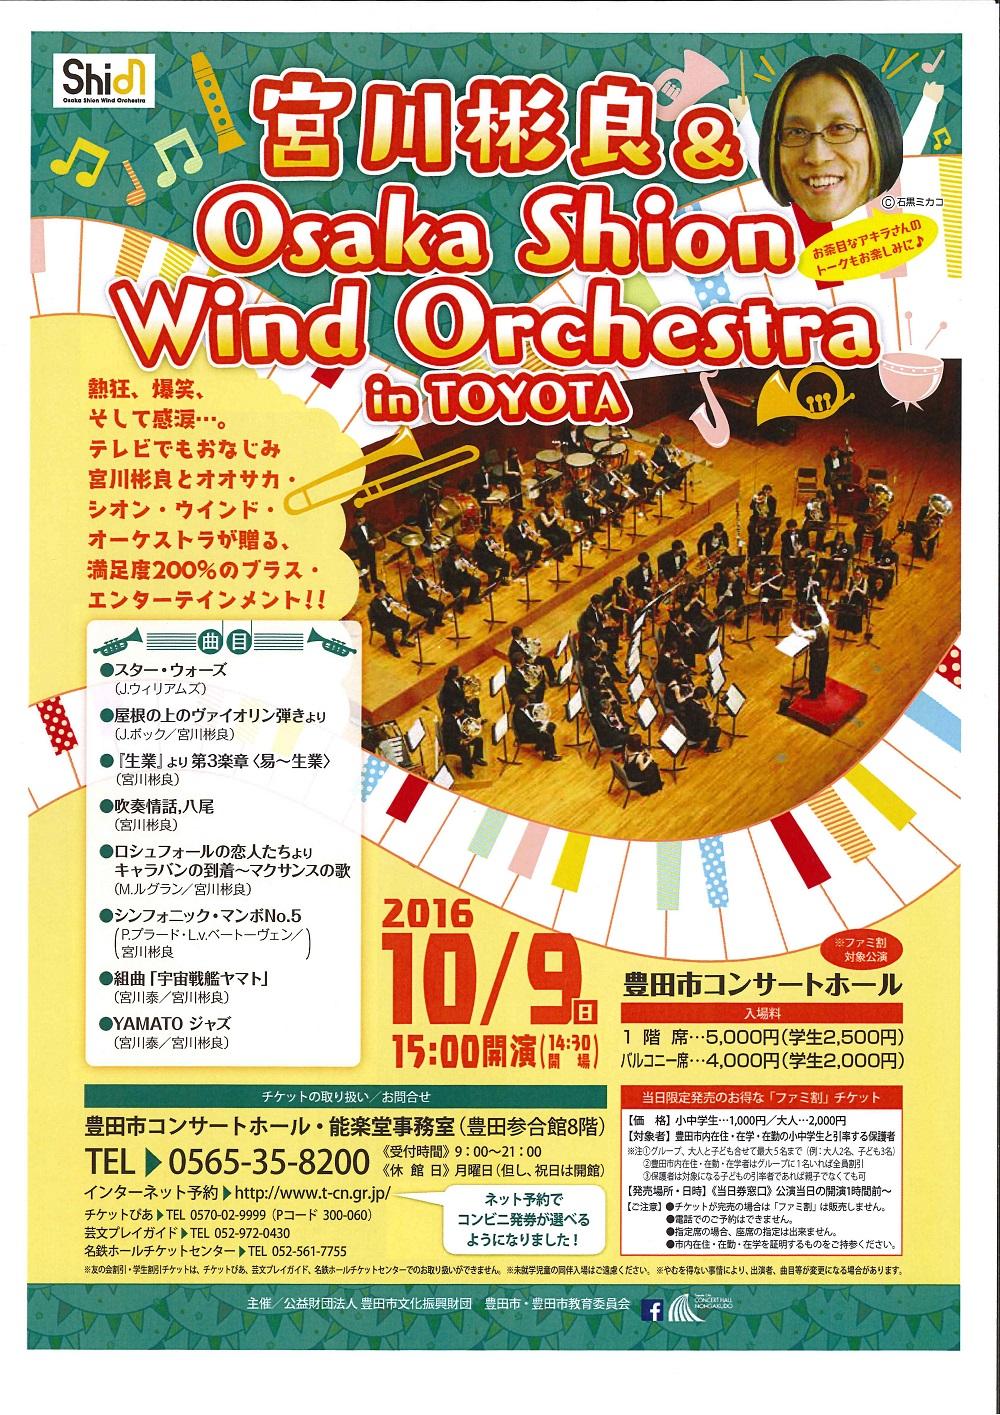 宮川彬良＆Osaka Shion Wind Orchestra in TOYOTA